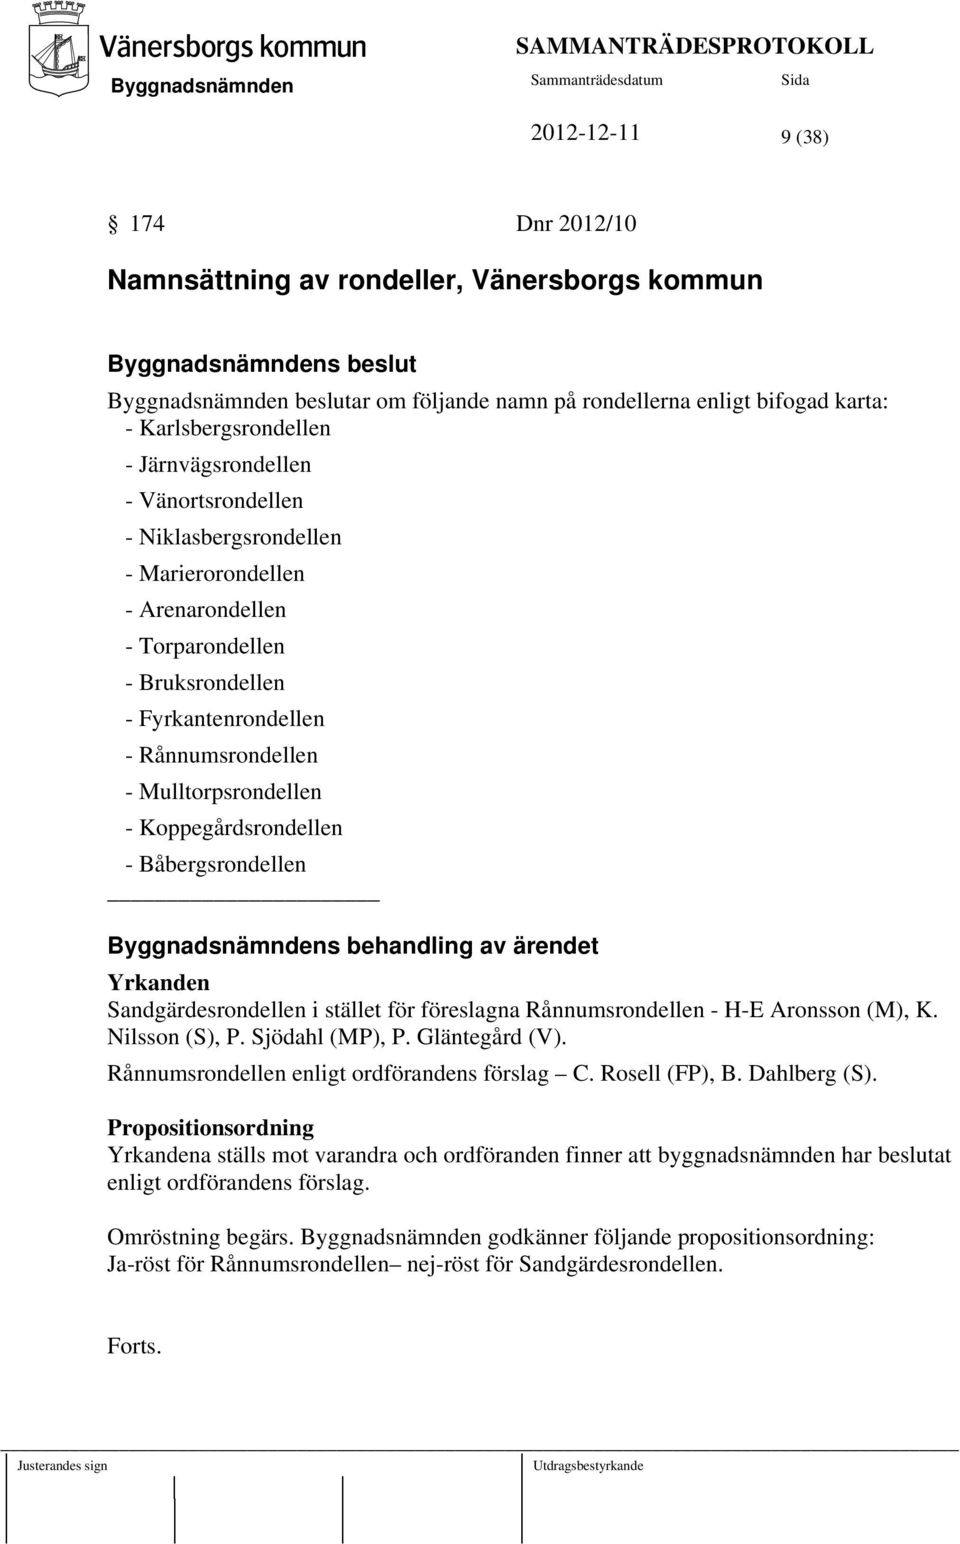 Båbergsrondellen s behandling av ärendet Yrkanden Sandgärdesrondellen i stället för föreslagna Rånnumsrondellen - H-E Aronsson (M), K. Nilsson (S), P. Sjödahl (MP), P. Gläntegård (V).